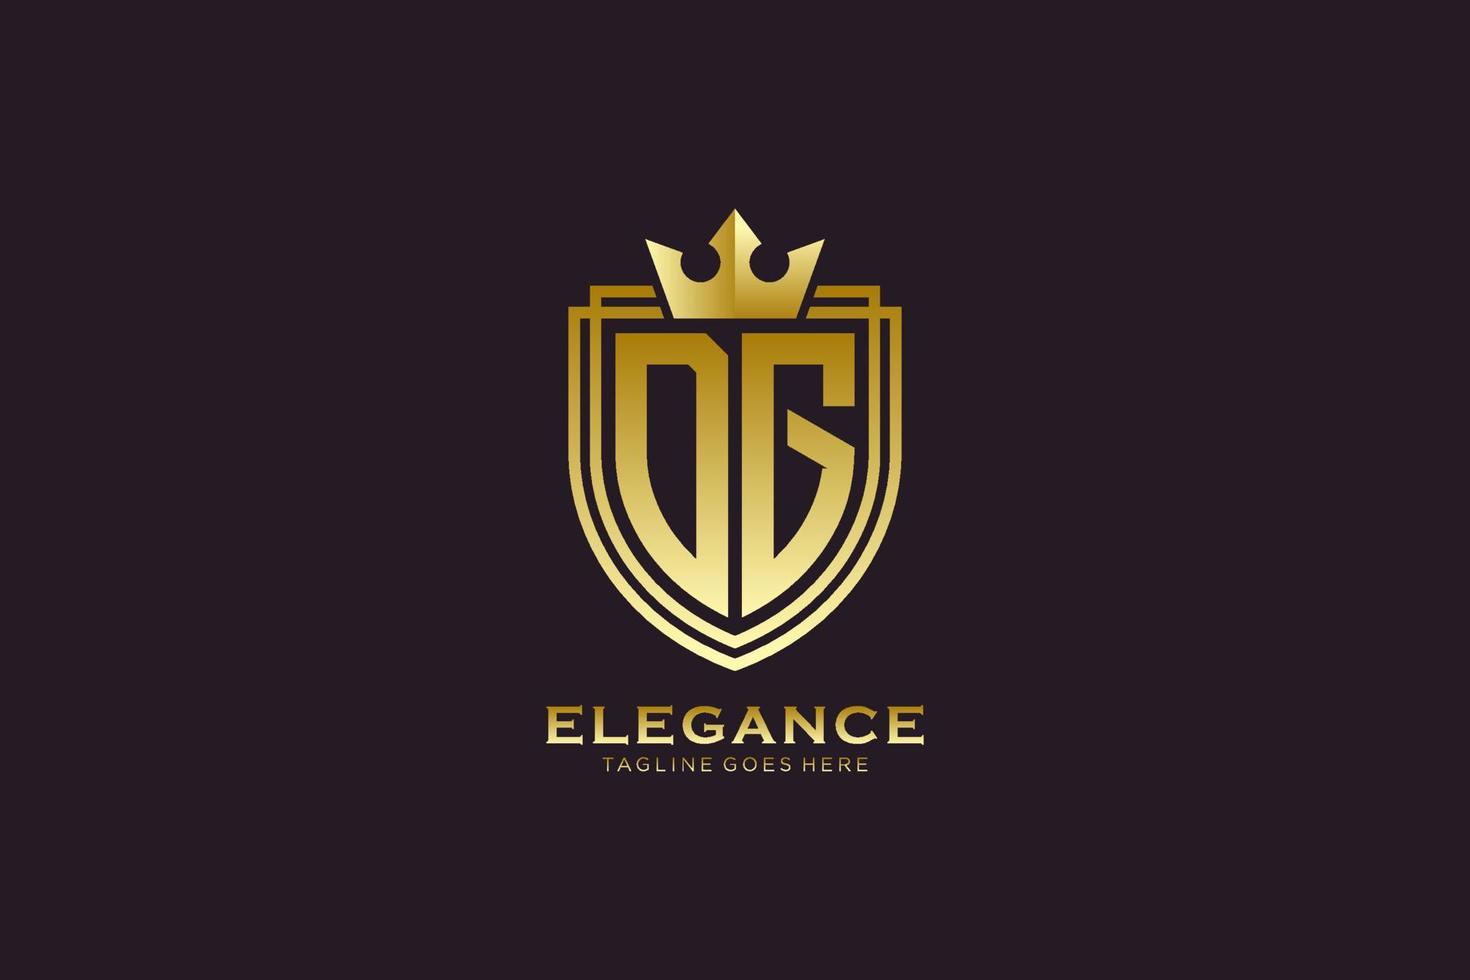 logo monogramme de luxe élégant initial dg ou modèle de badge avec volutes et couronne royale - parfait pour les projets de marque de luxe vecteur